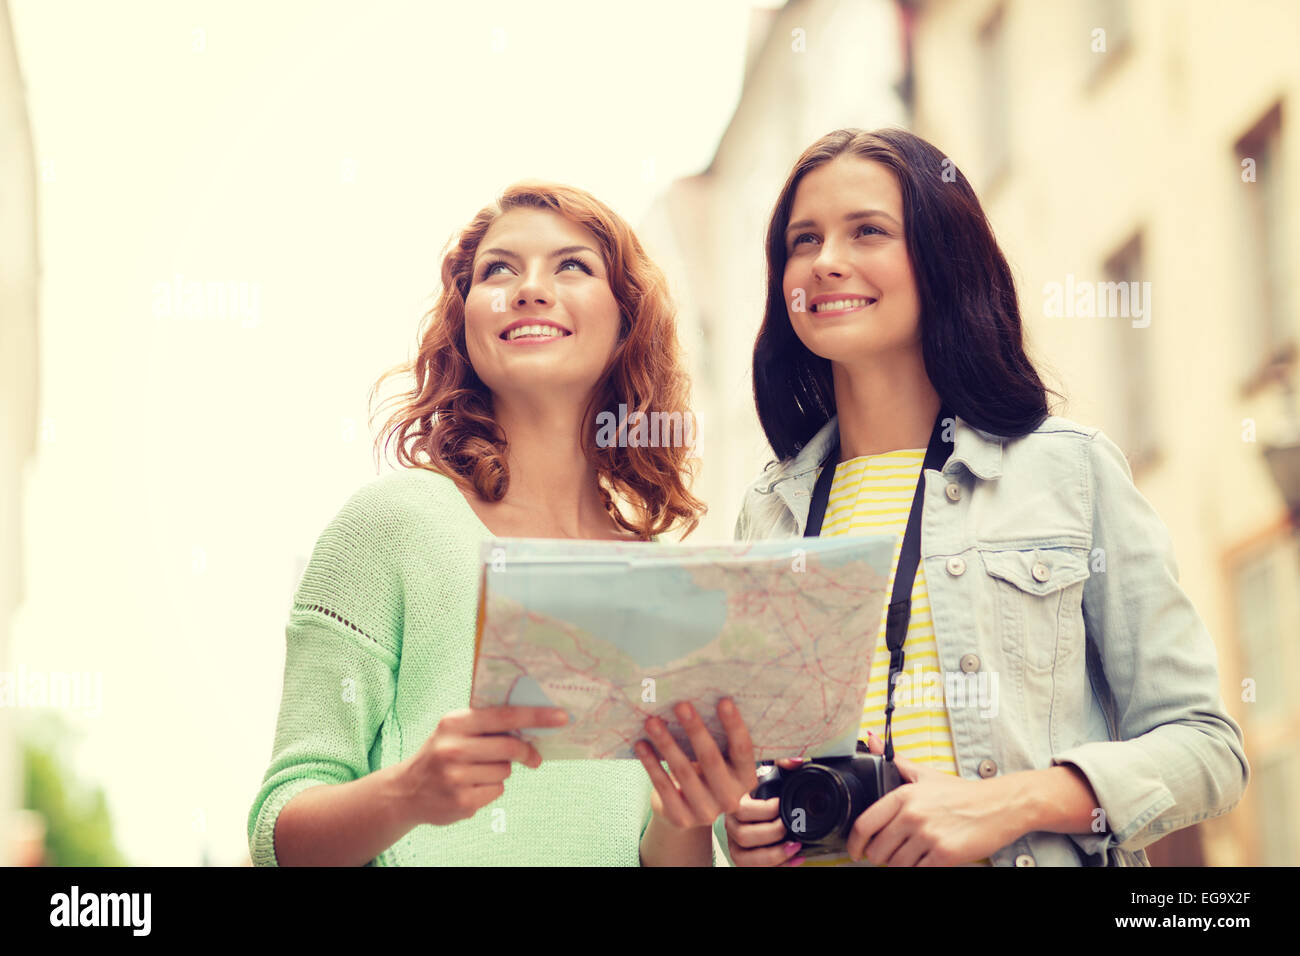 Smiling teenage girls avec la carte et l'appareil photo Banque D'Images